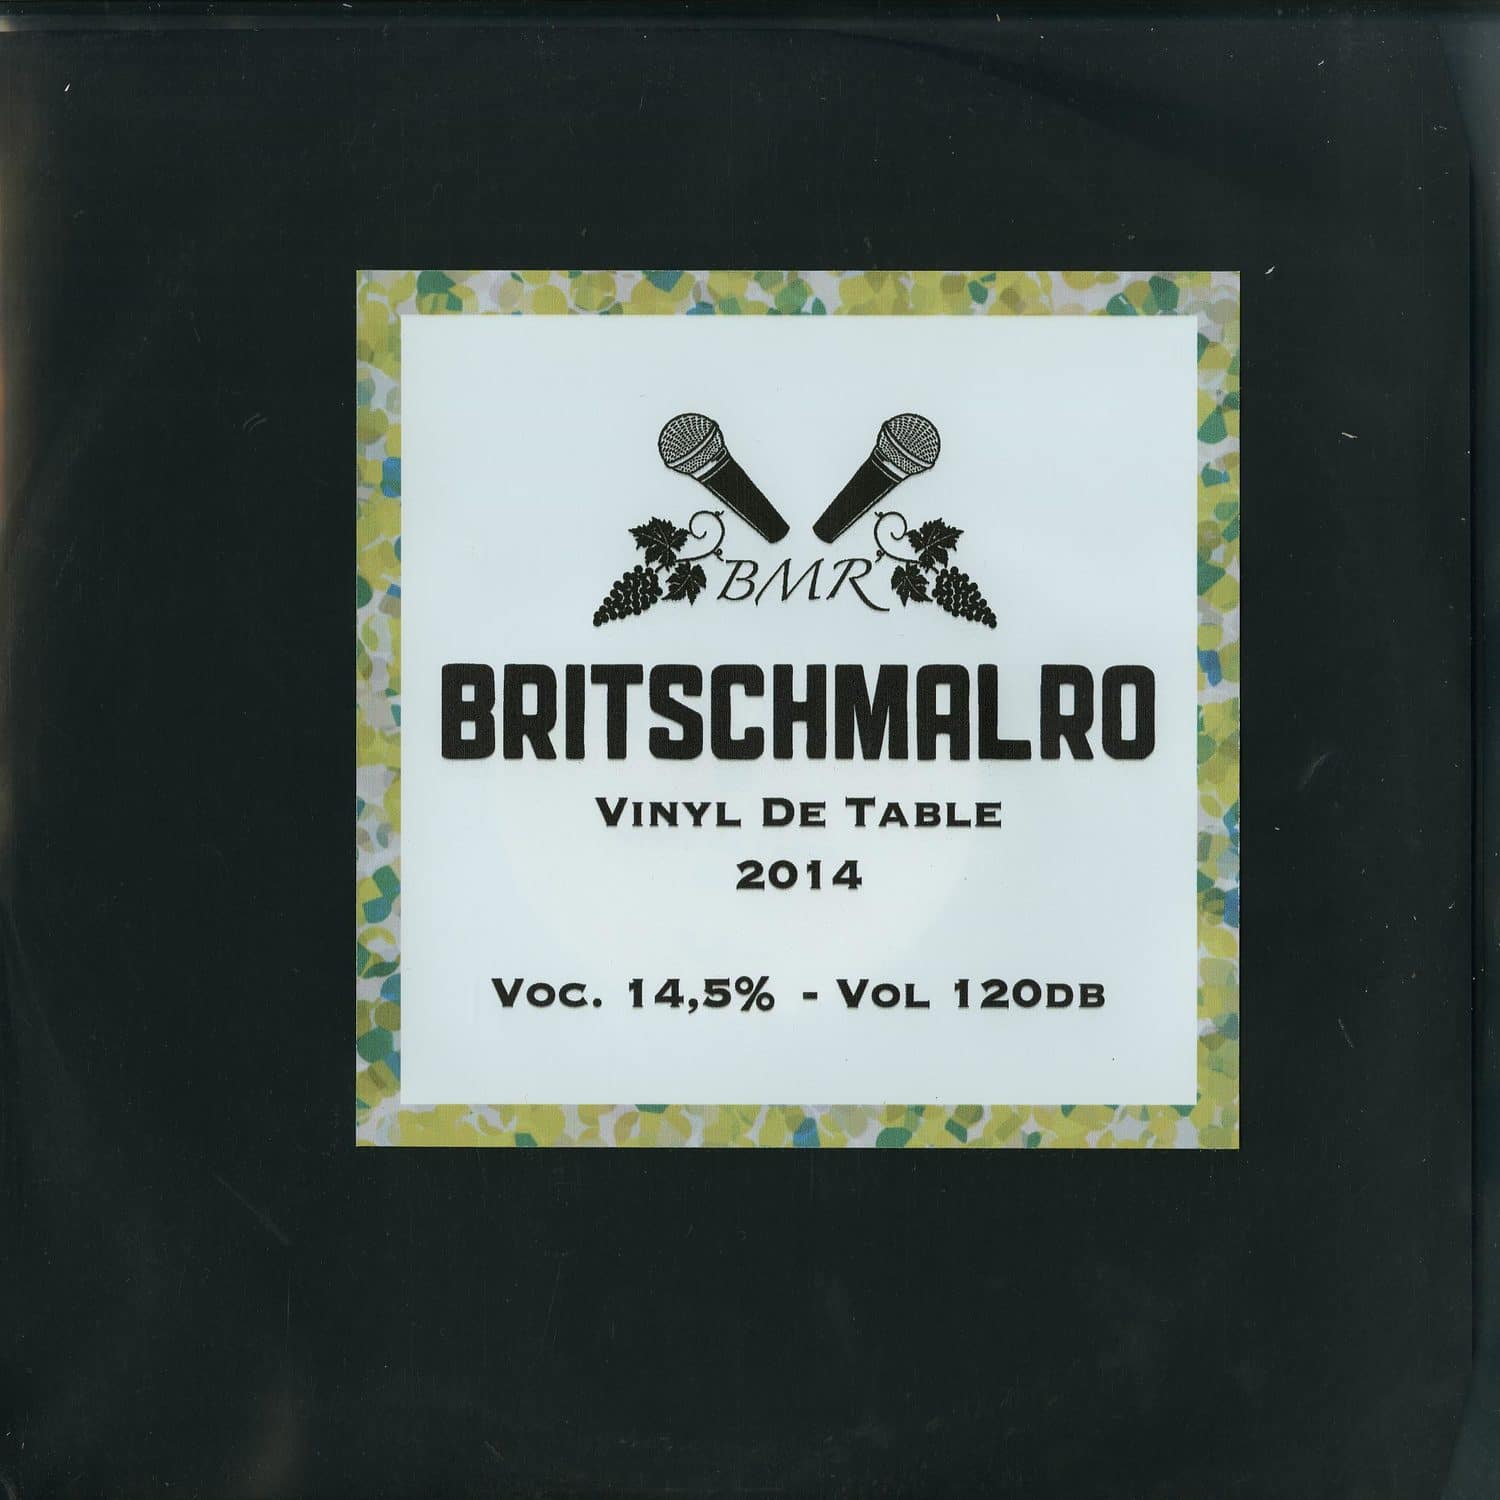 Britschmalro - VINYL DE TABLE 2014 